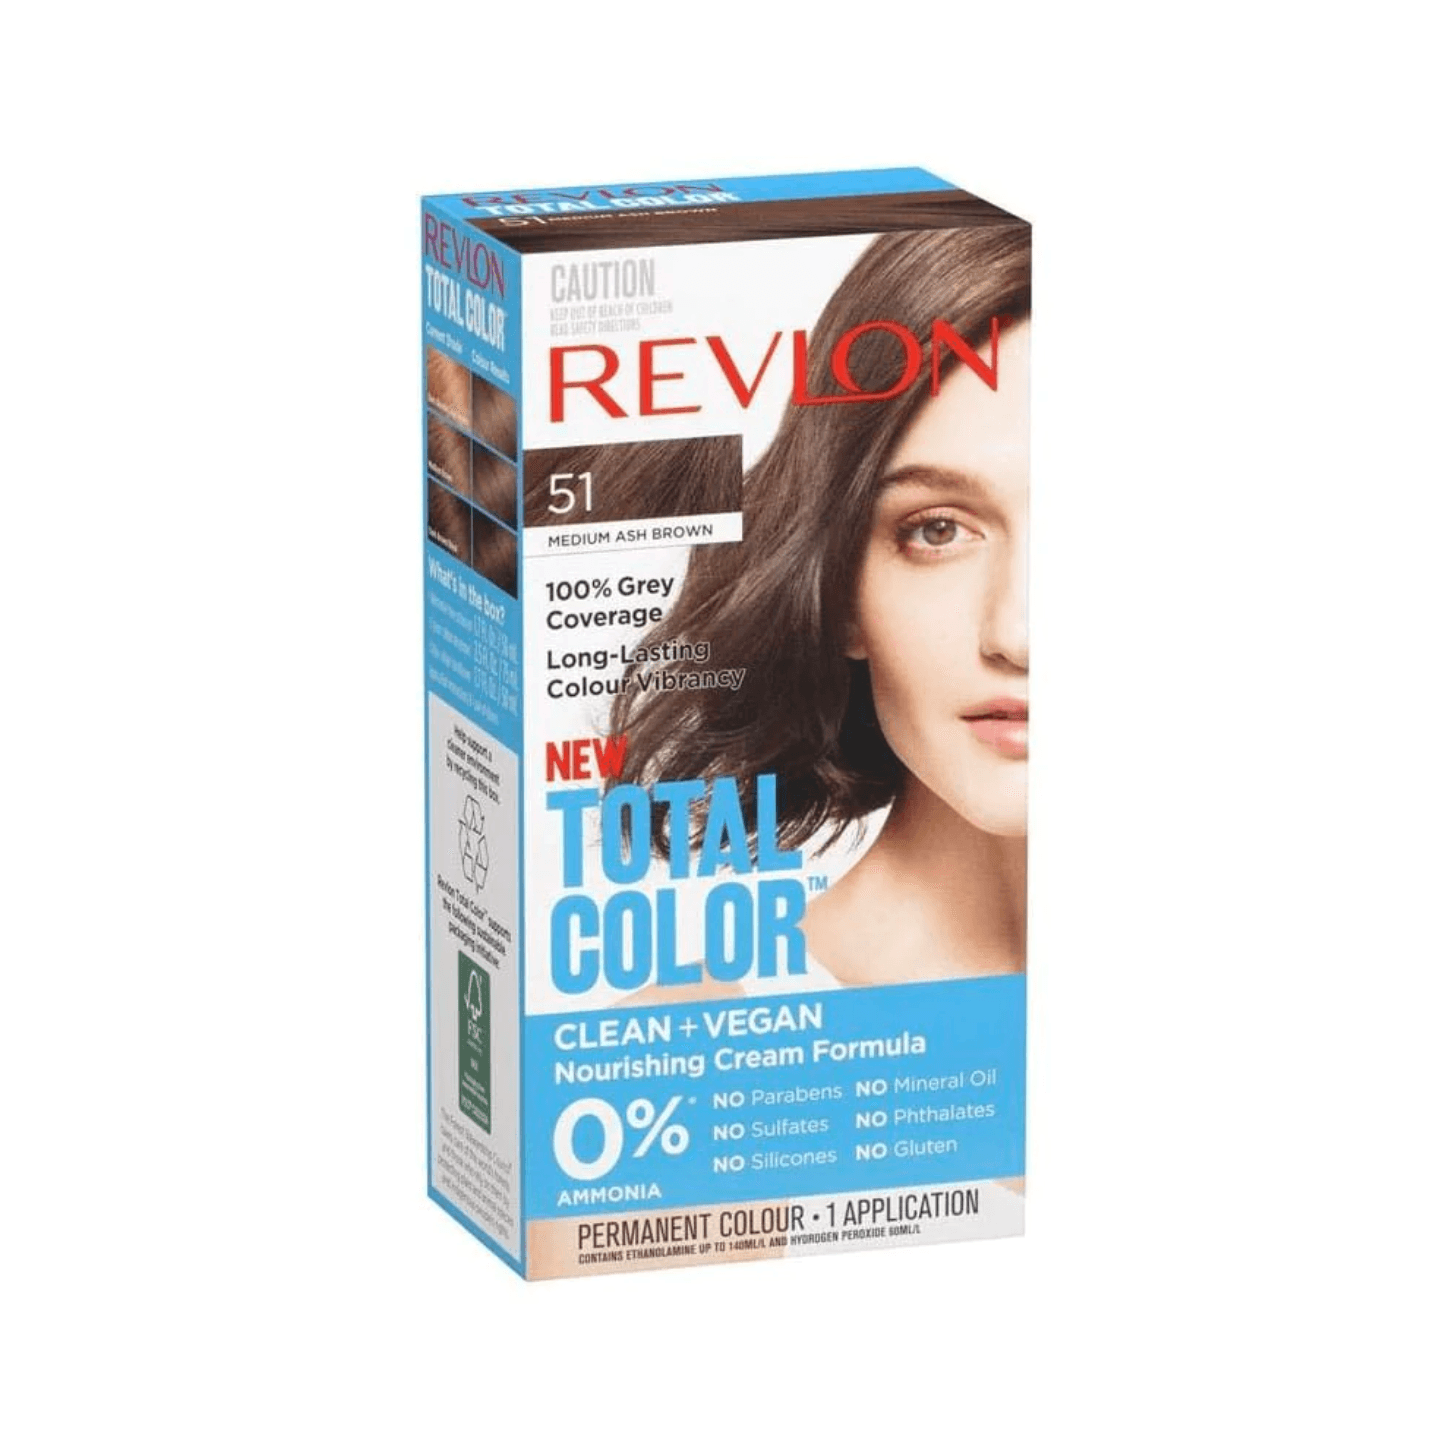 Revlon Total Color Permanent Colour 51 Medium Ash Brown - www.indiancart.com.au - Hair Colour - Revlon - Revlon